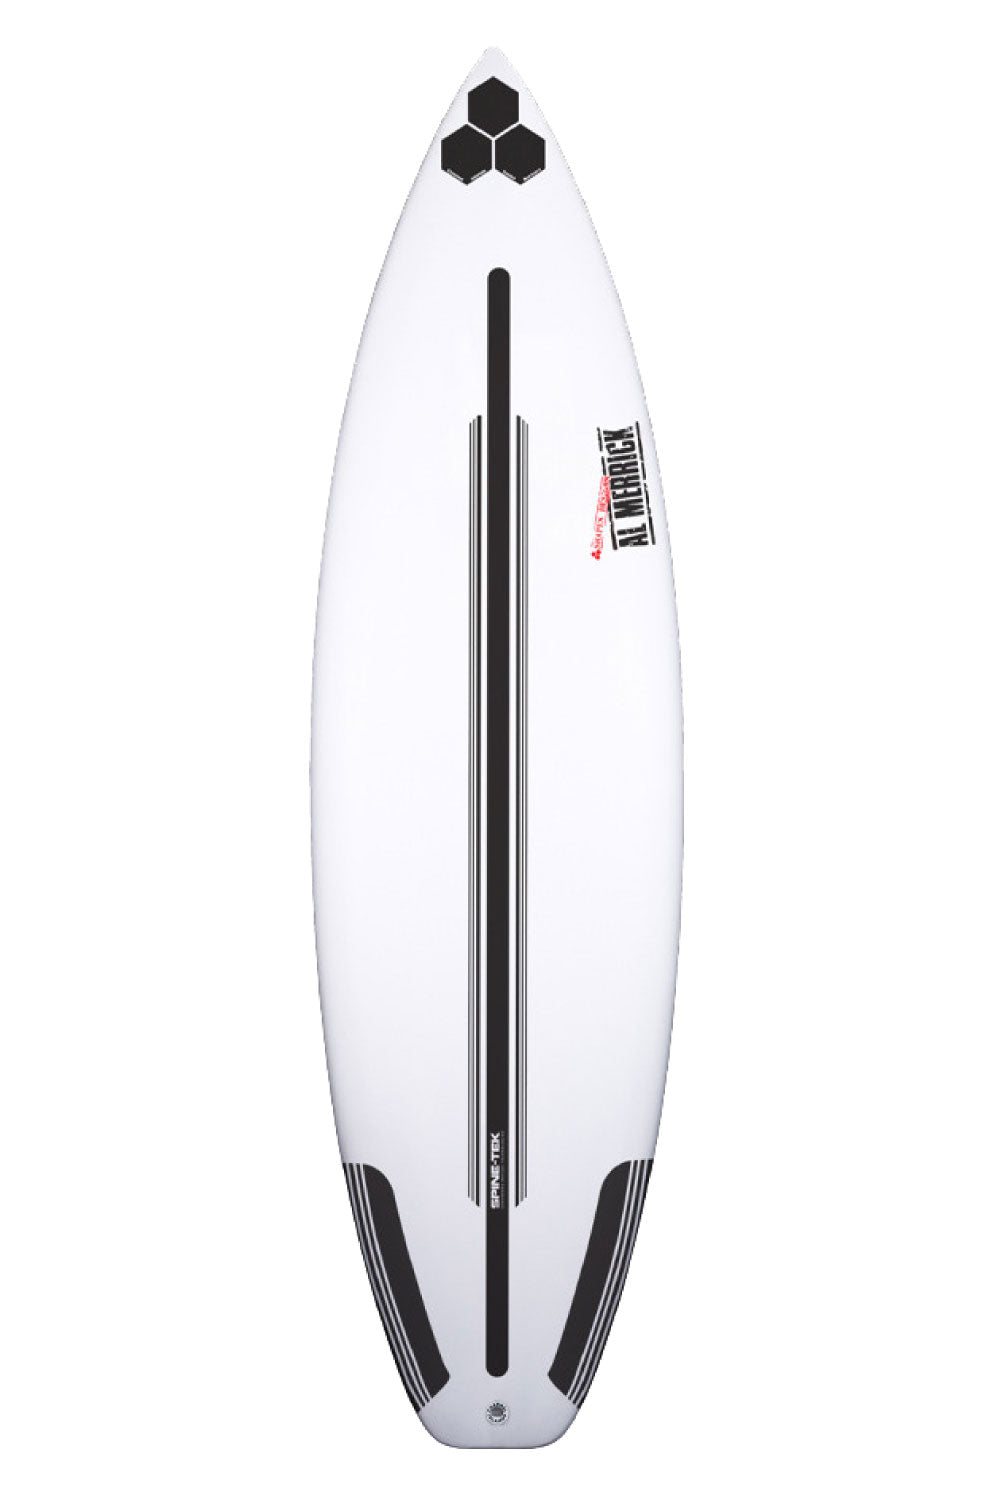 Channel Islands Two Happy Spine-Tek Surfboard